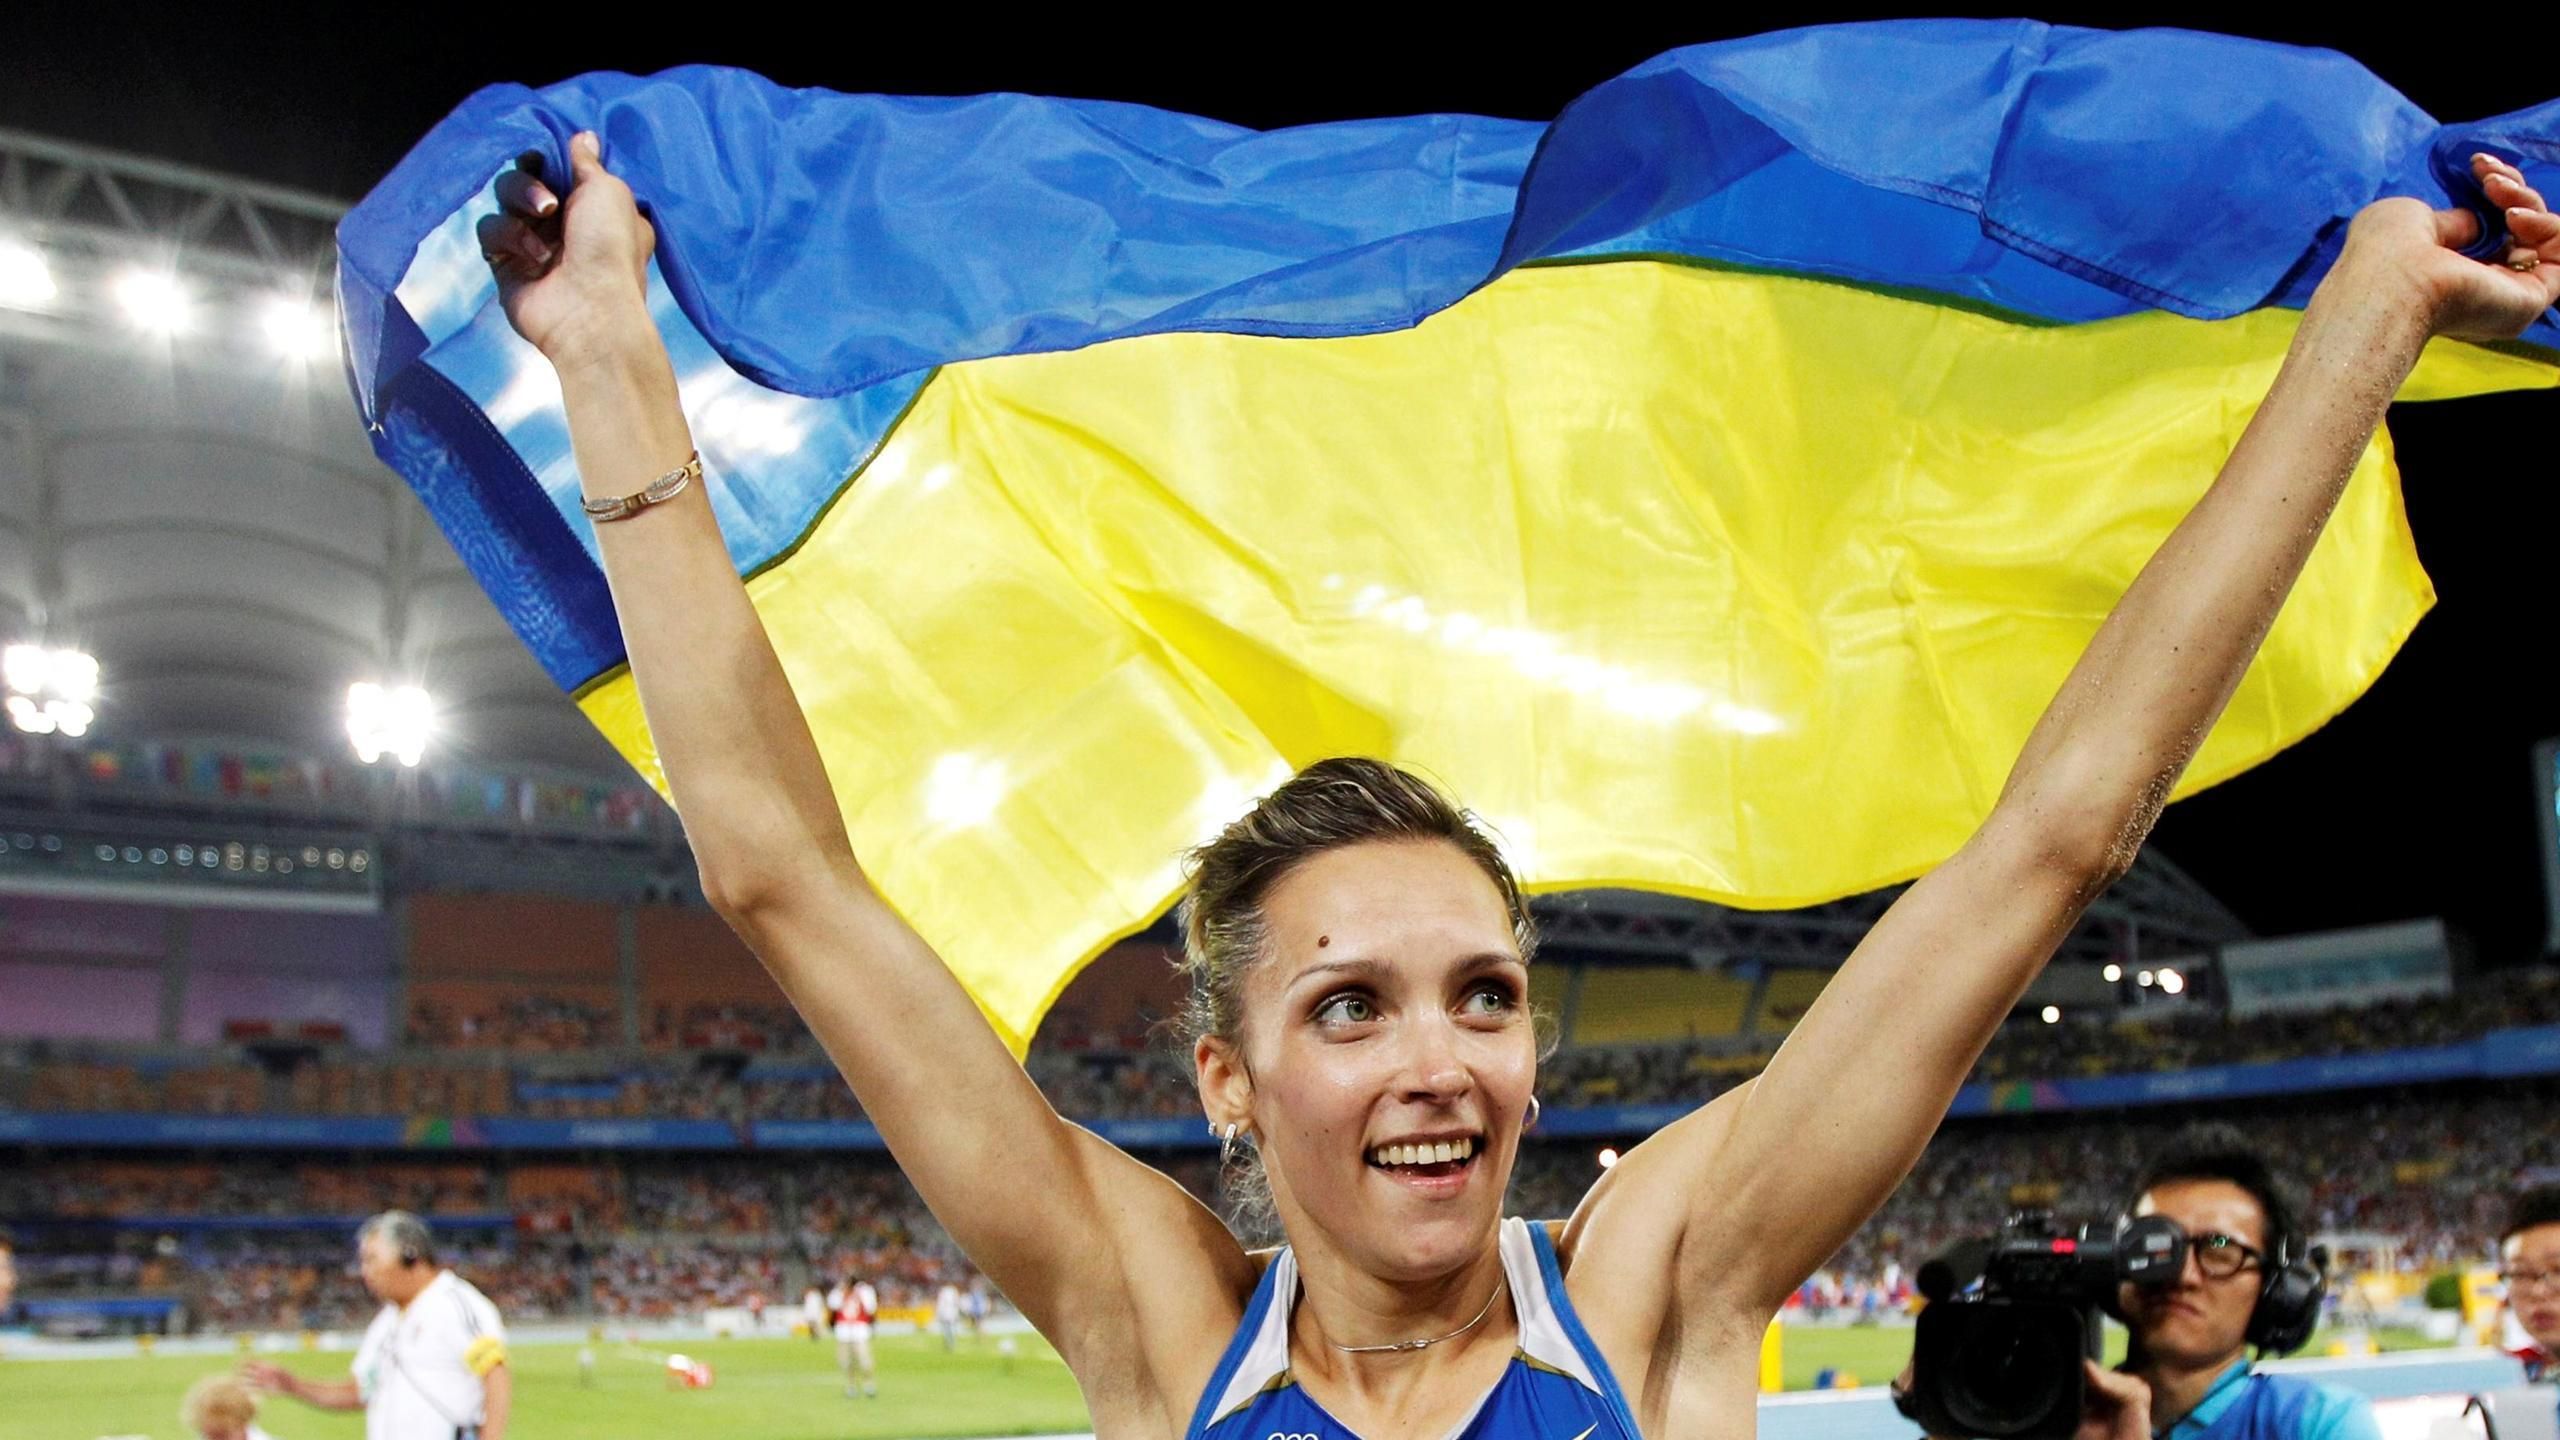 Мужчины должны ехать на соревнование за границу и приносить максимум пользы Украине, – Саладуха - 24 канал Спорт